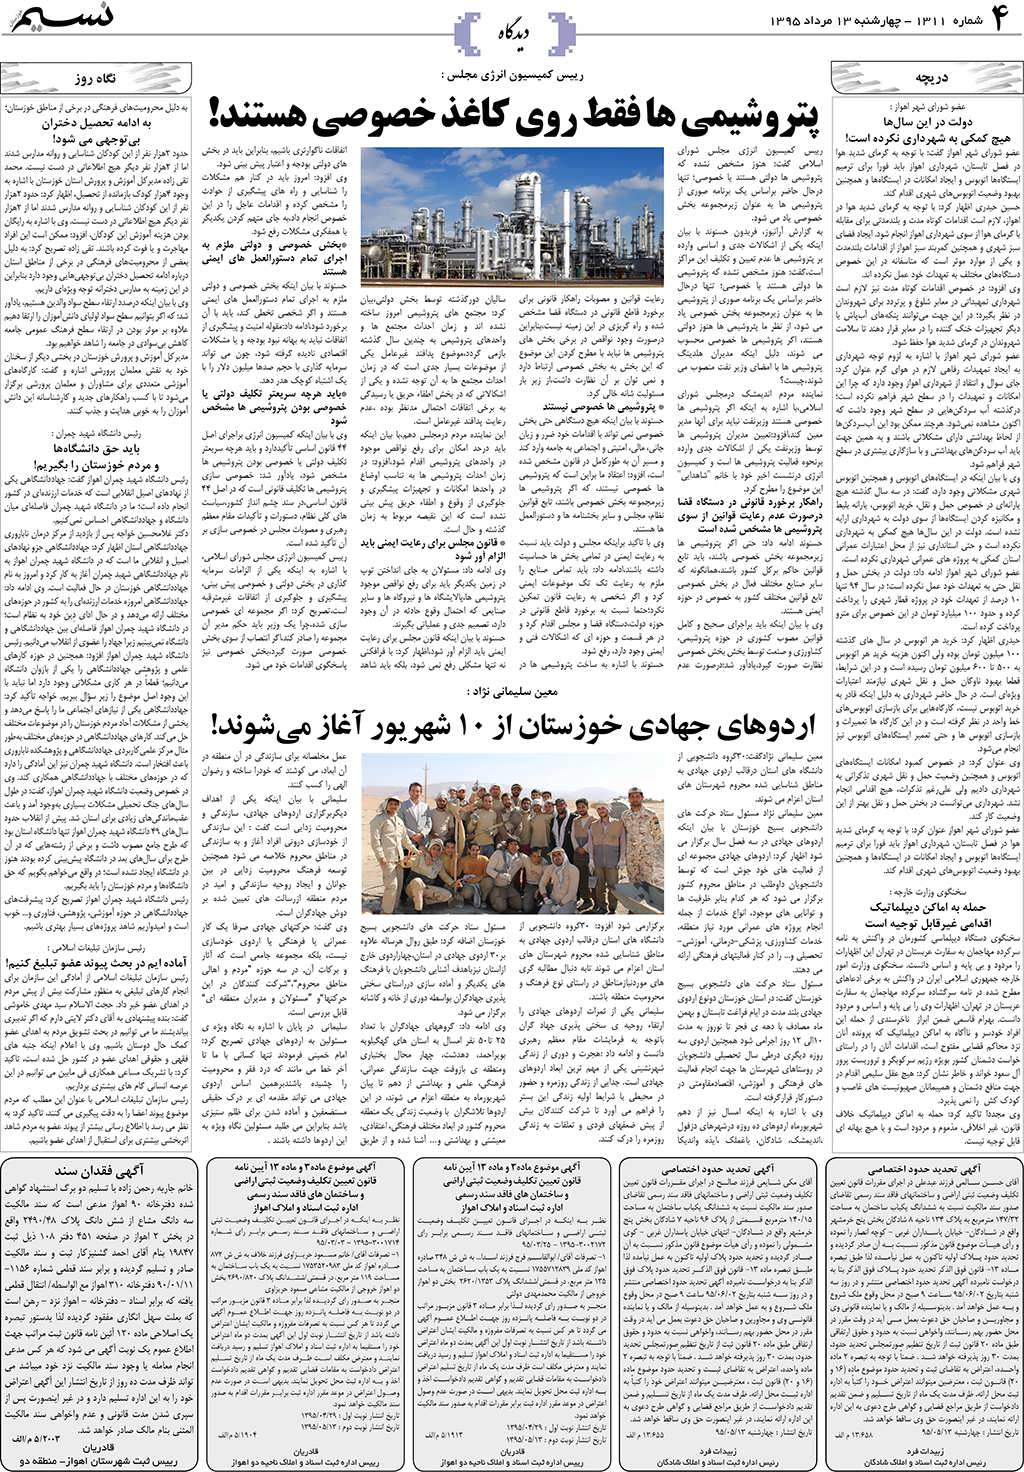 صفحه دیدگاه روزنامه نسیم شماره 1311